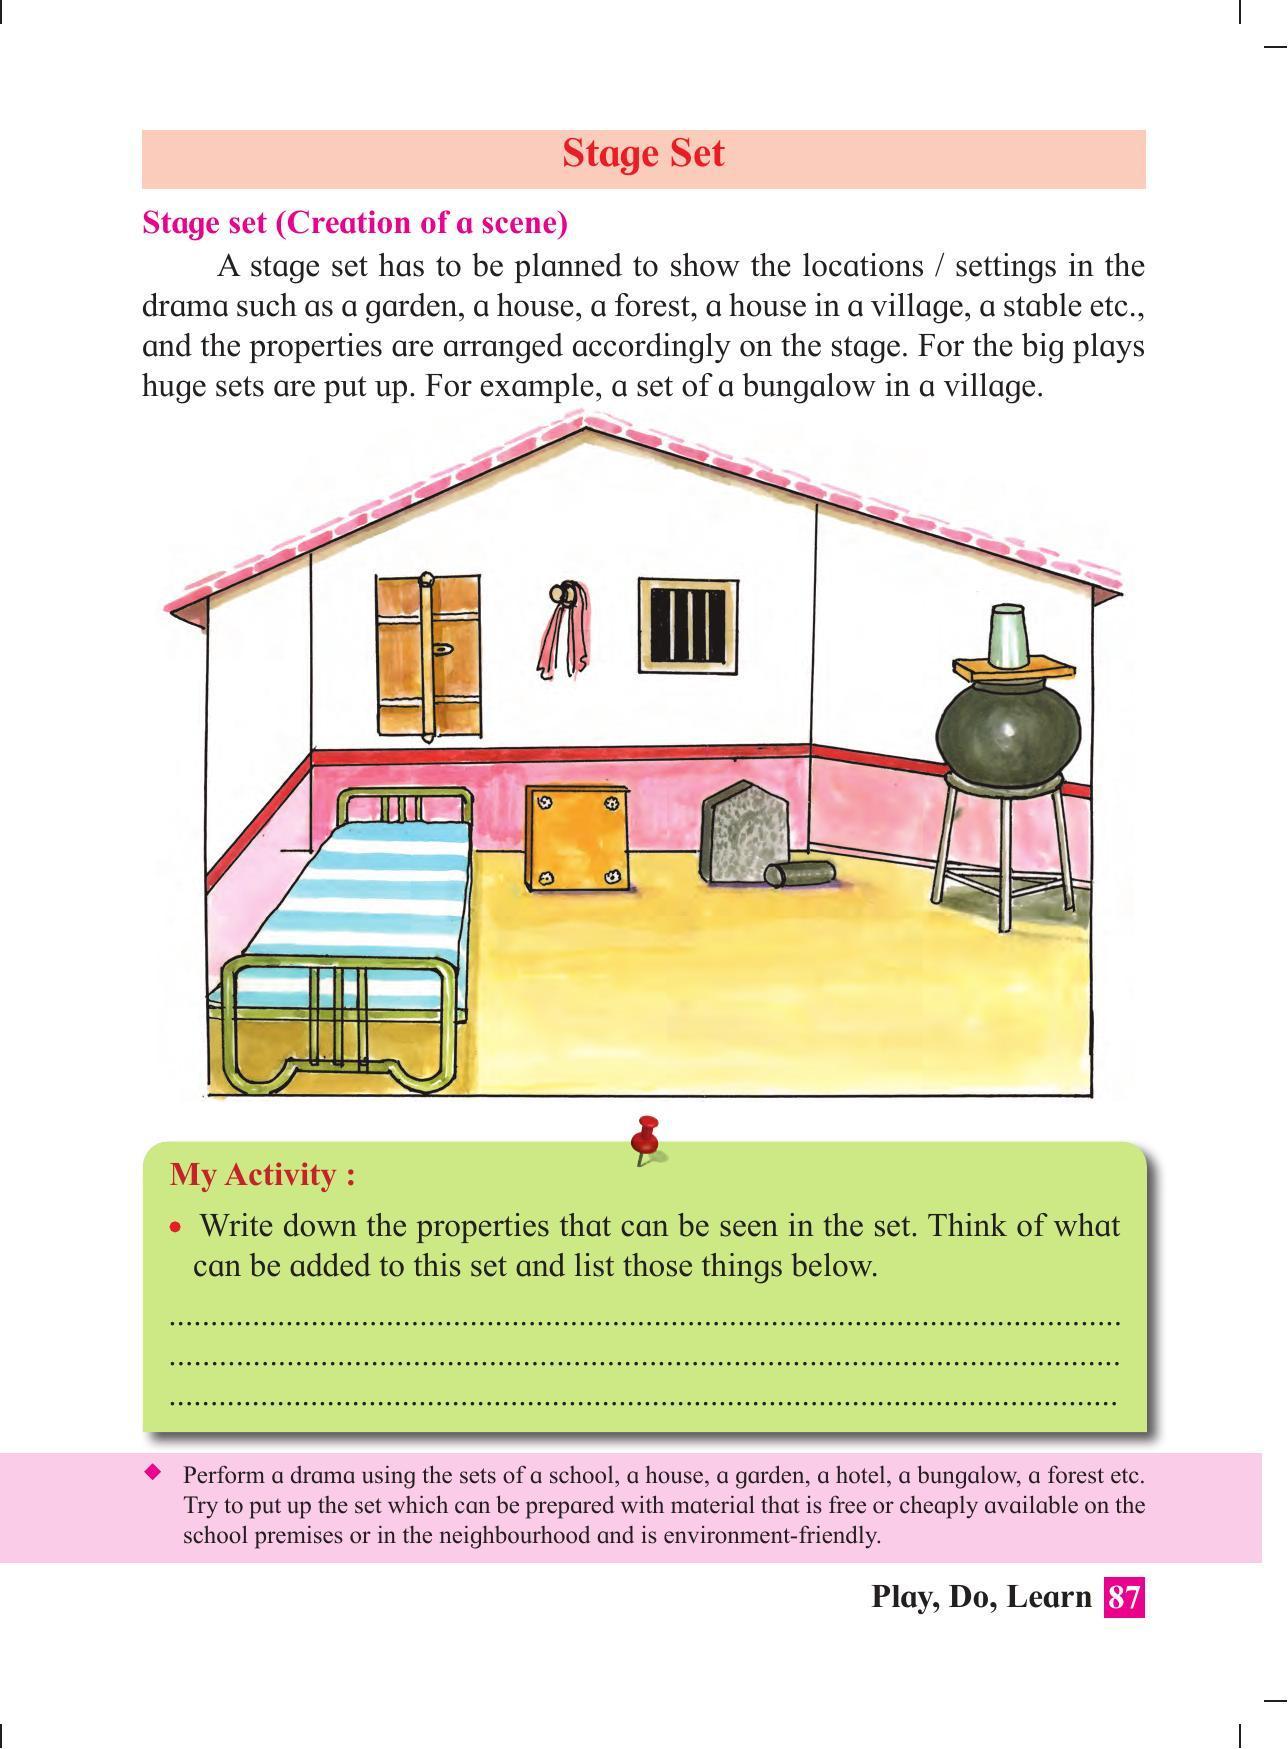 Maharashtra Board Class 4 Play Do Learn (English Medium) Textbook - Page 96